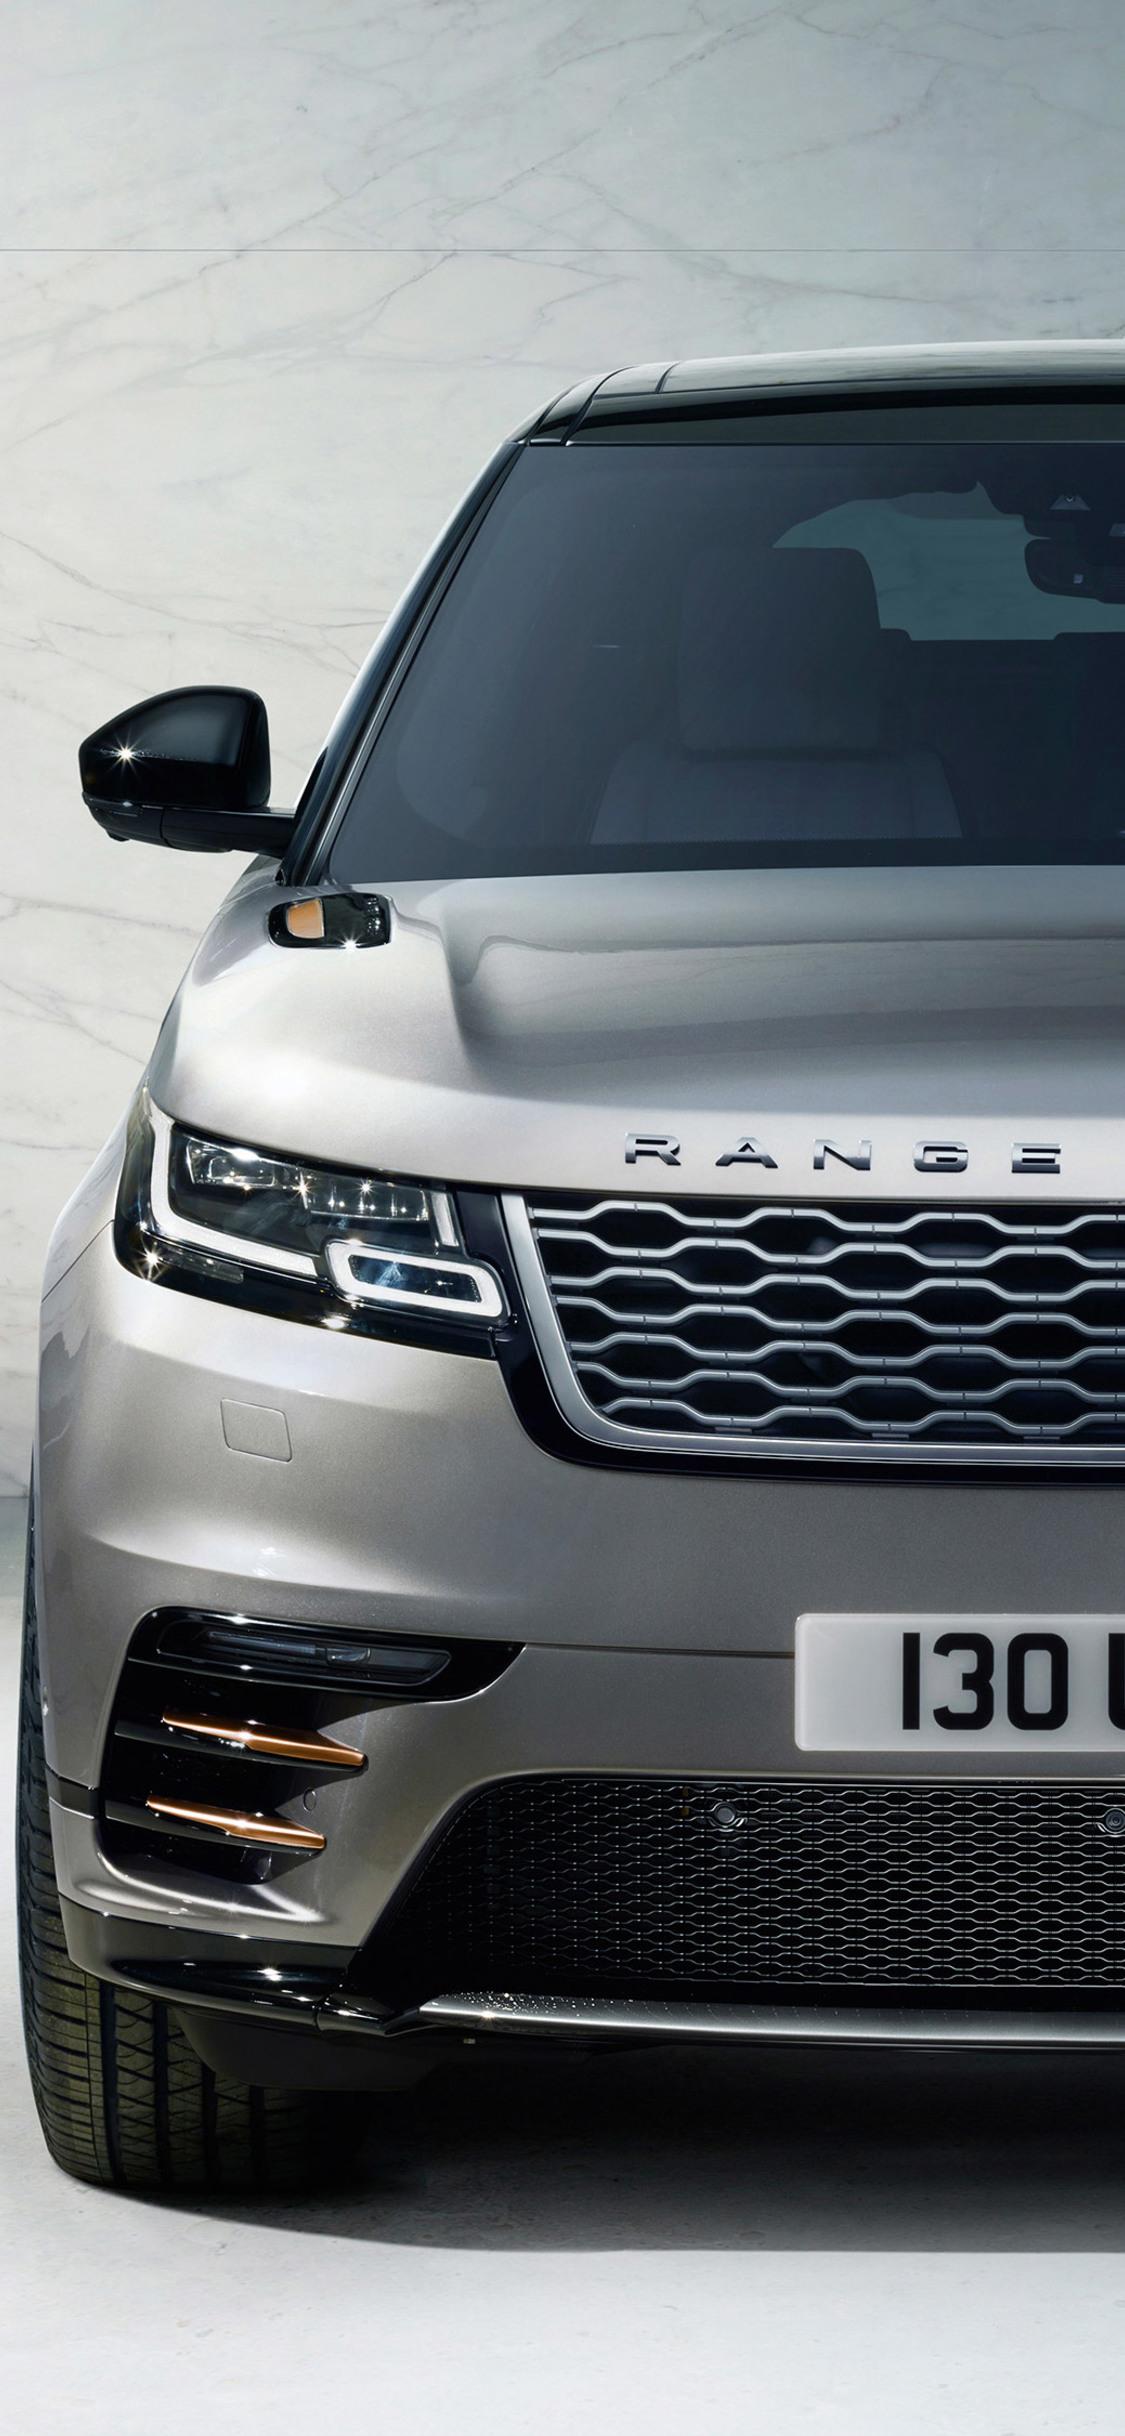 crossline: Range Rover Sport Wallpaper iPhone